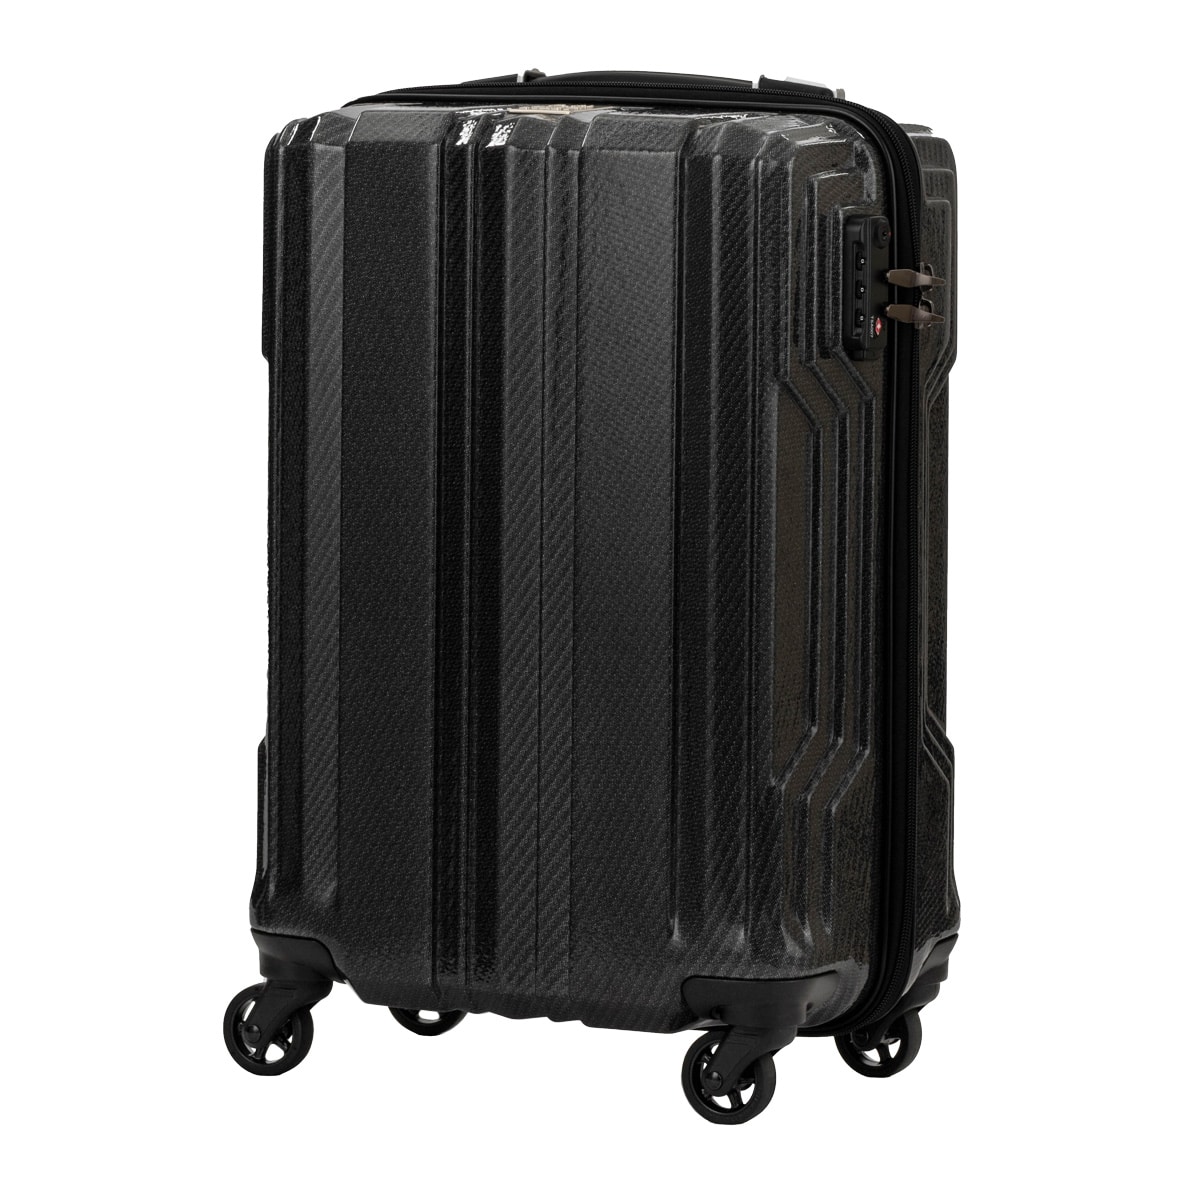 スーツケース キャリーバッグ キャリーケース 機内持込 ファスナー 超軽量